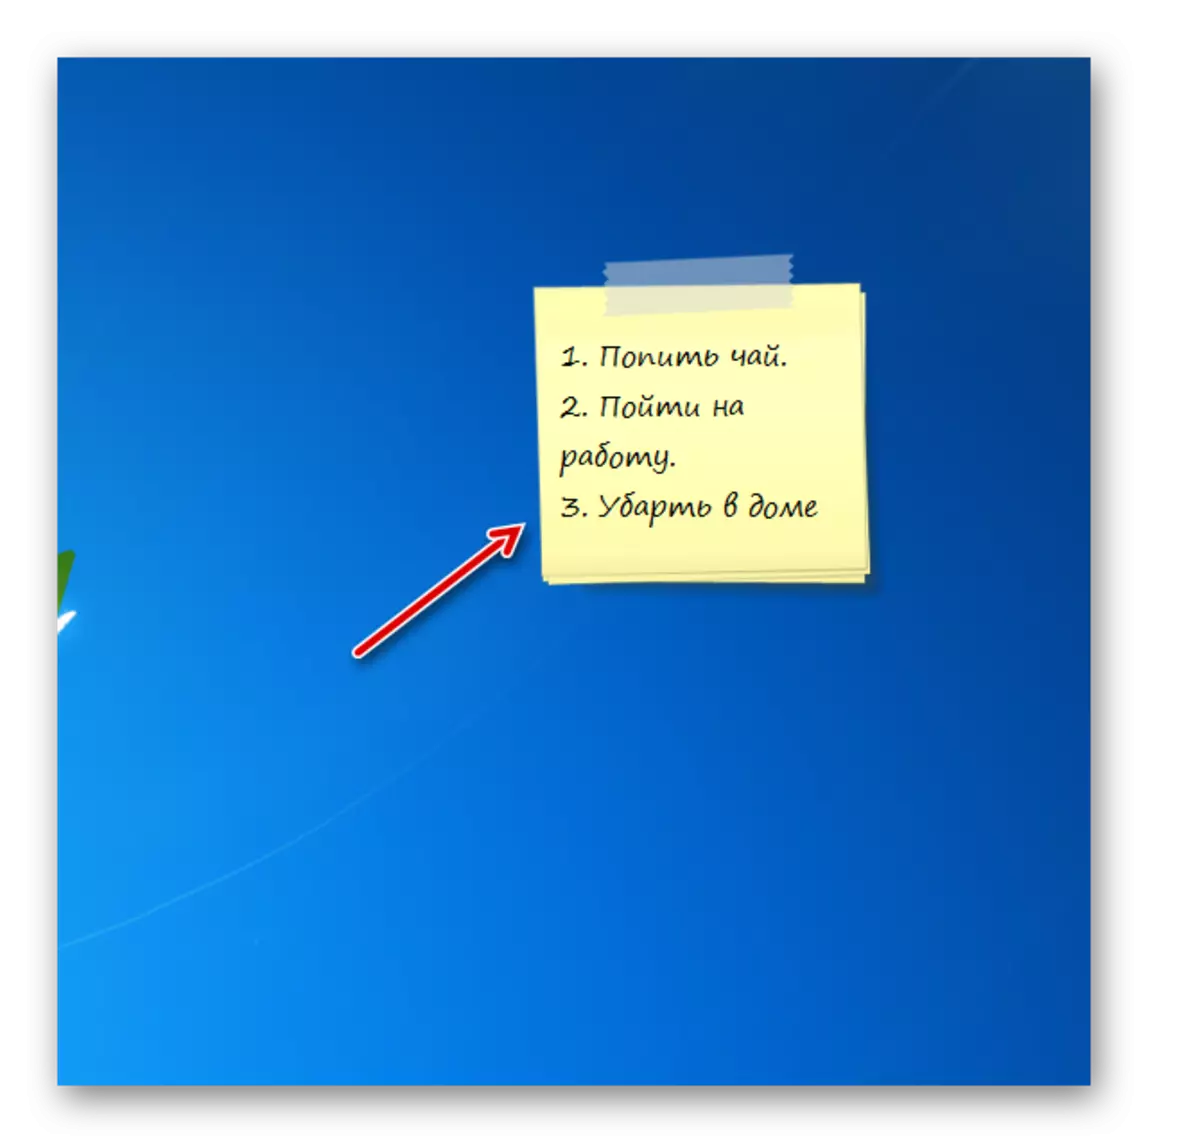 Windows 7 માં ડેસ્કટૉપ પર કાચંડો નોસ્કોલોર ગેજેટ ગેજેટ ઇન્ટરફેસમાં નોંધ